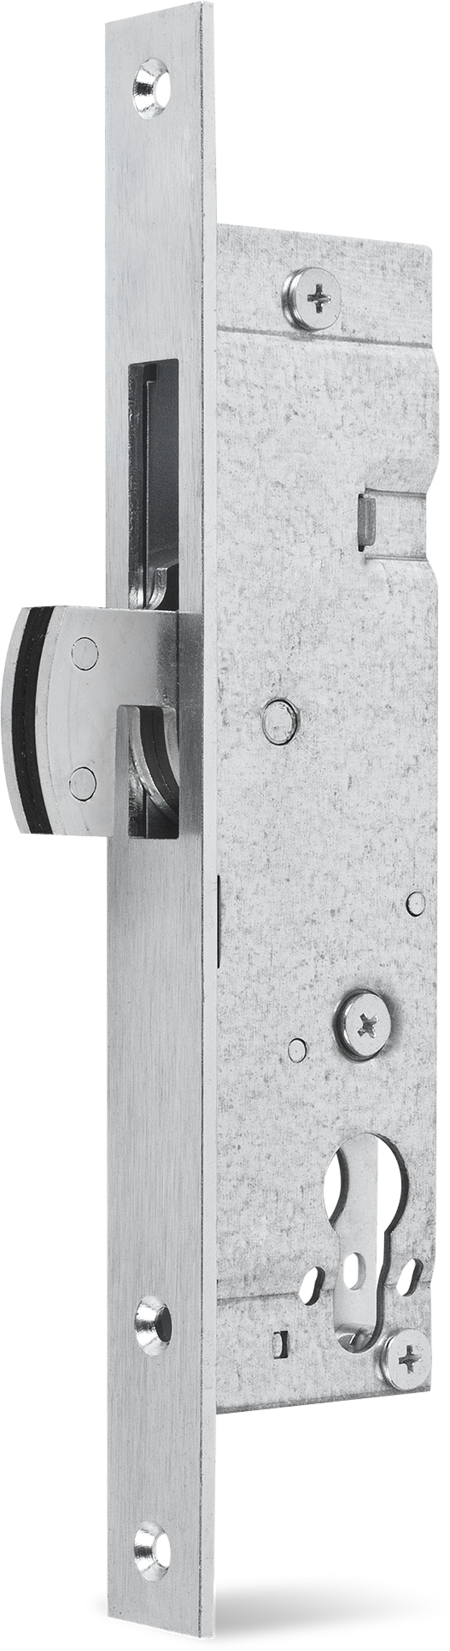 Einsteckschloss mit Haken-Schwenkriegel, Stahl verzinkt, Dornmaß 25 mm, Stulp 24 x 245 x 3 mm